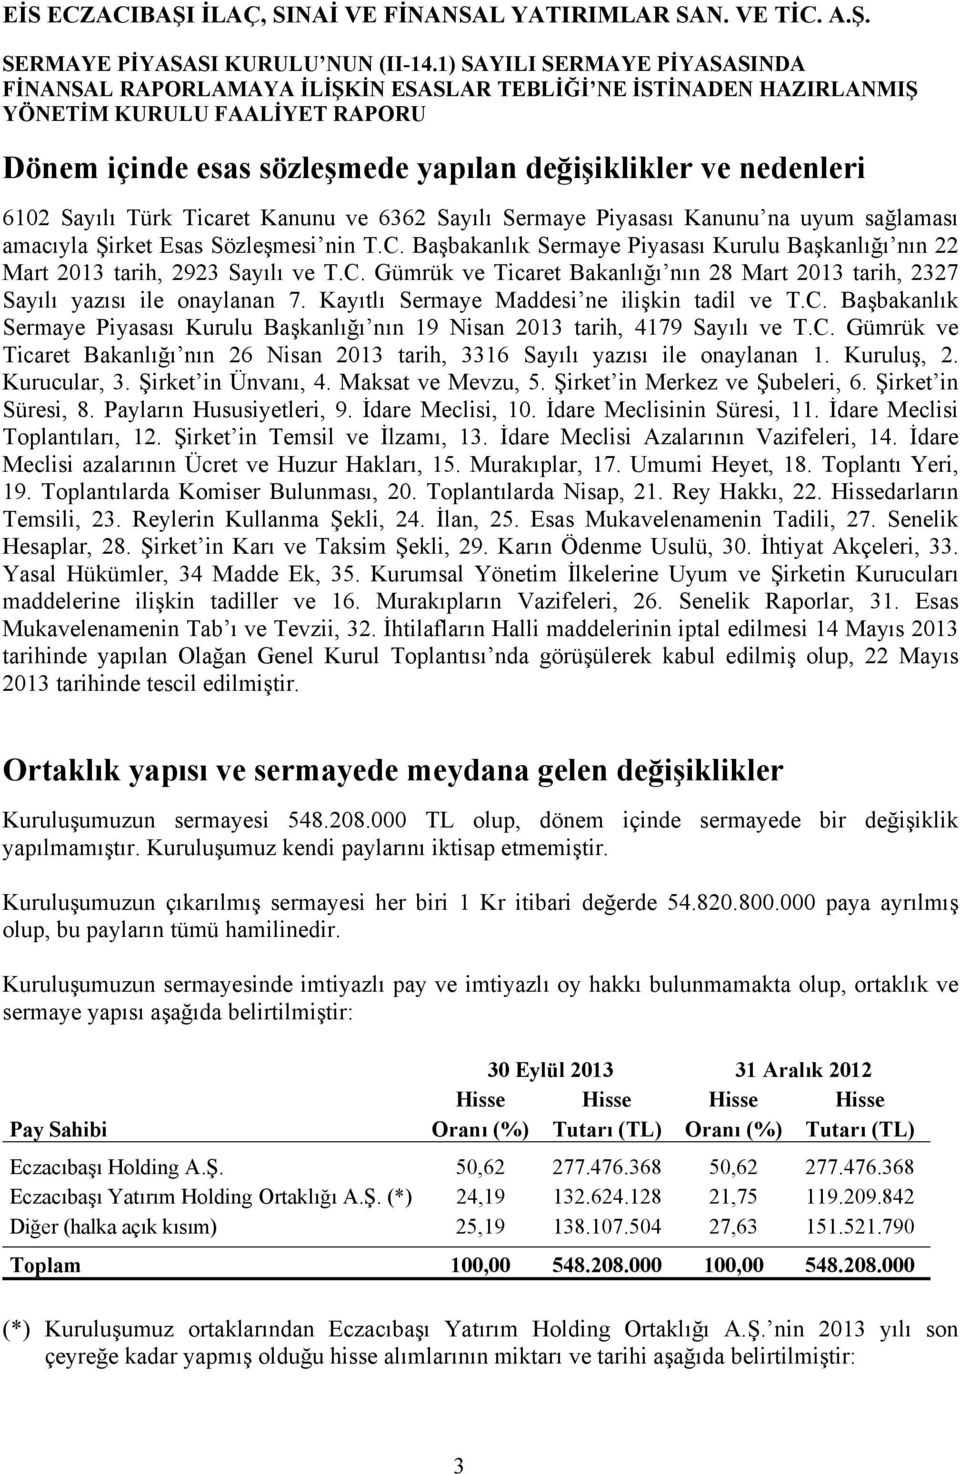 Kayıtlı Sermaye Maddesi ne ilişkin tadil ve T.C. Başbakanlık Sermaye Piyasası Kurulu Başkanlığı nın 19 Nisan 2013 tarih, 4179 Sayılı ve T.C. Gümrük ve Ticaret Bakanlığı nın 26 Nisan 2013 tarih, 3316 Sayılı yazısı ile onaylanan 1.